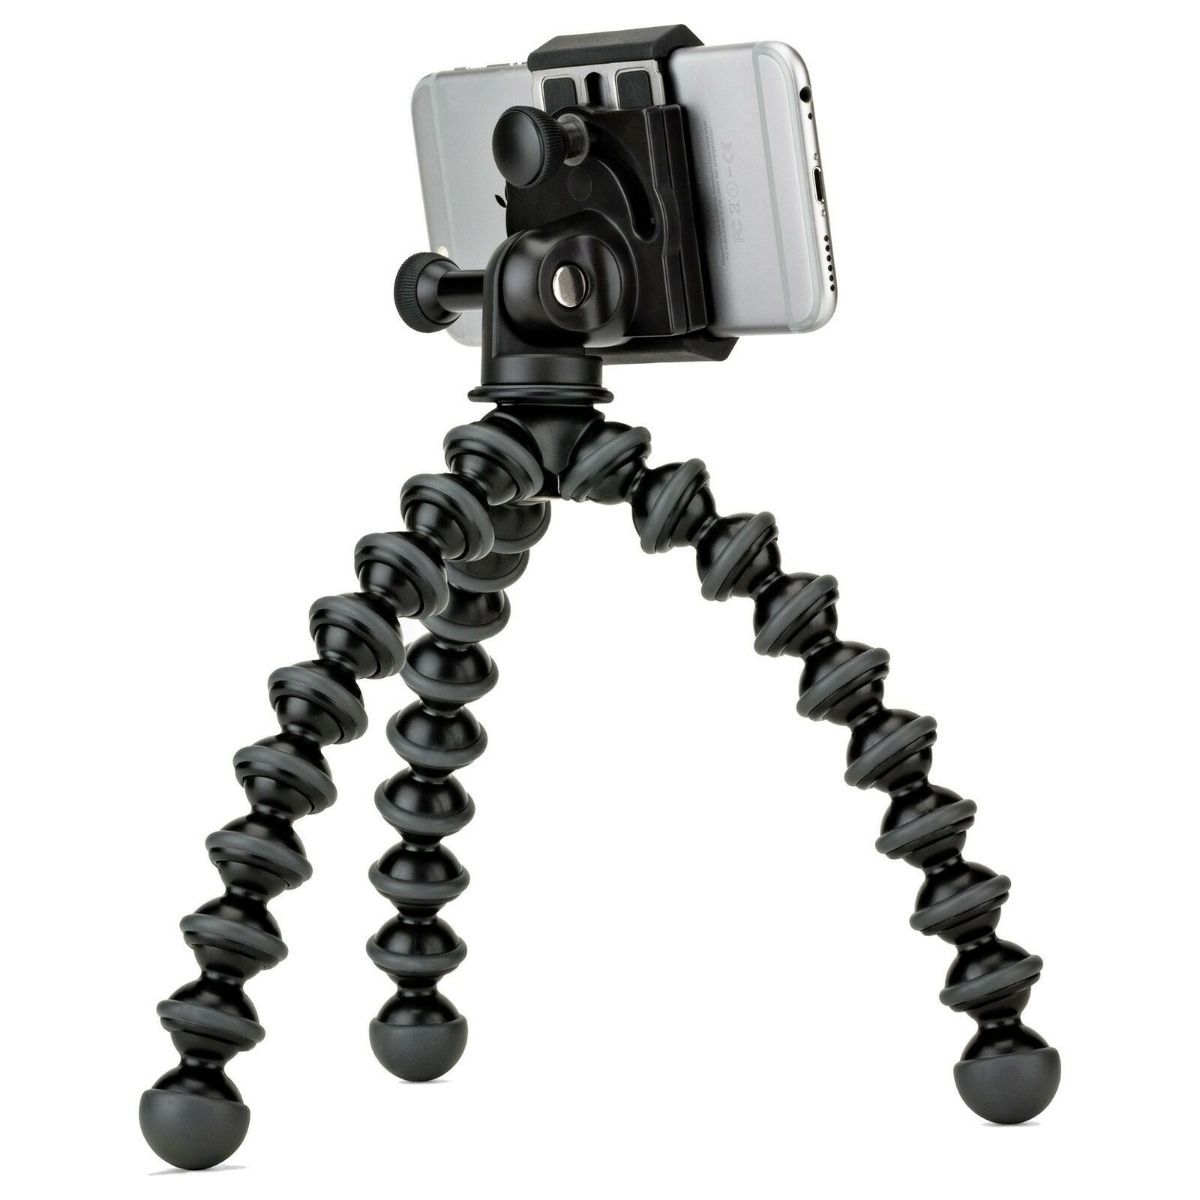 Joby GripTight GorillaPod Stand PRO Mini Tripod for Smartphone